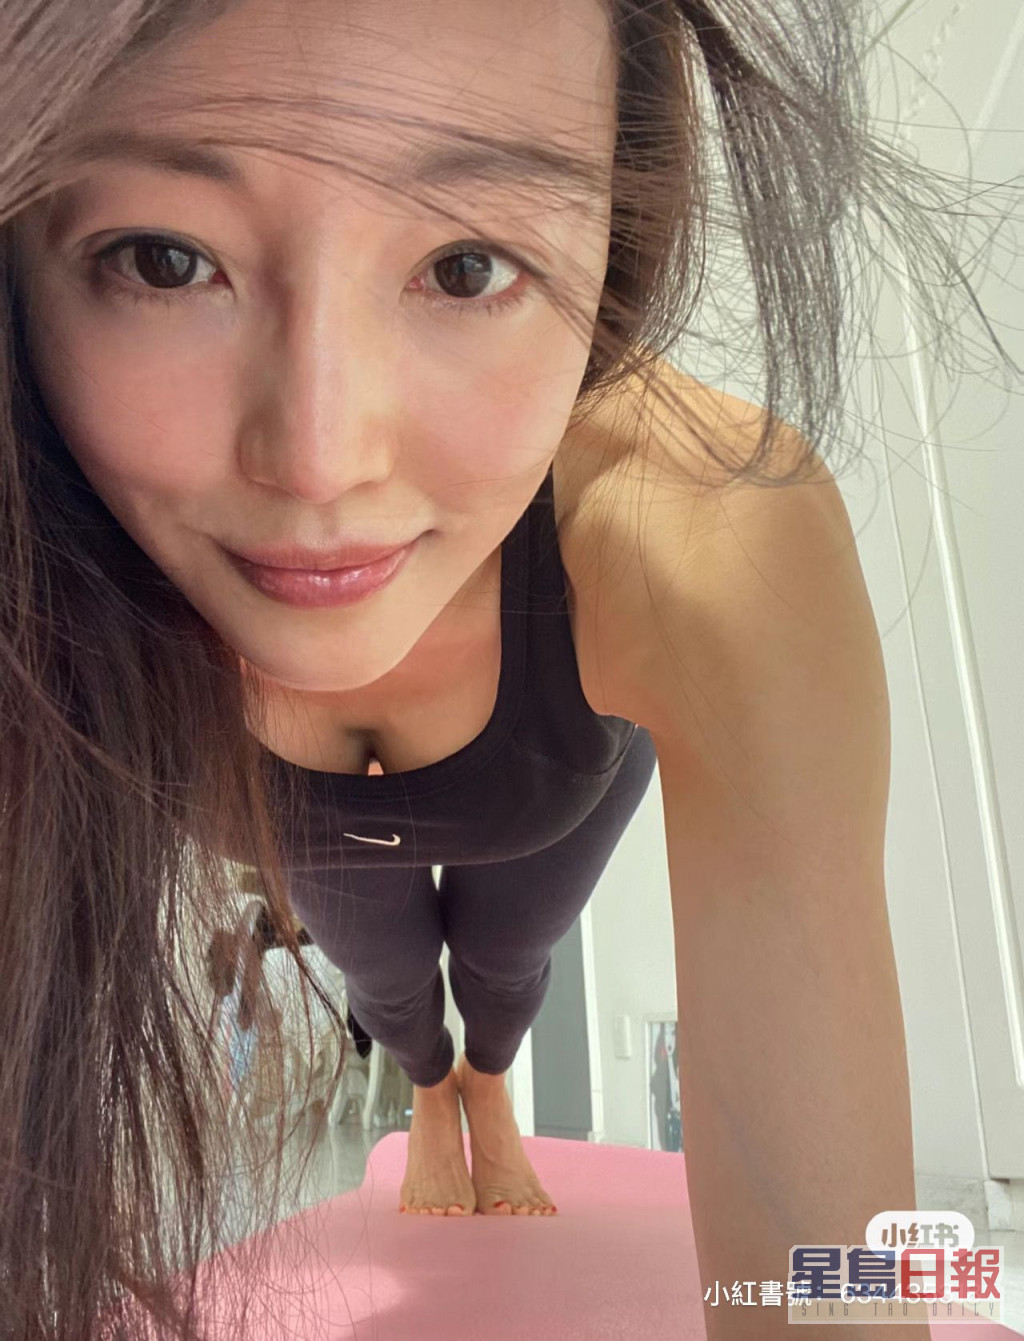 陈嘉容平日勤力健身。